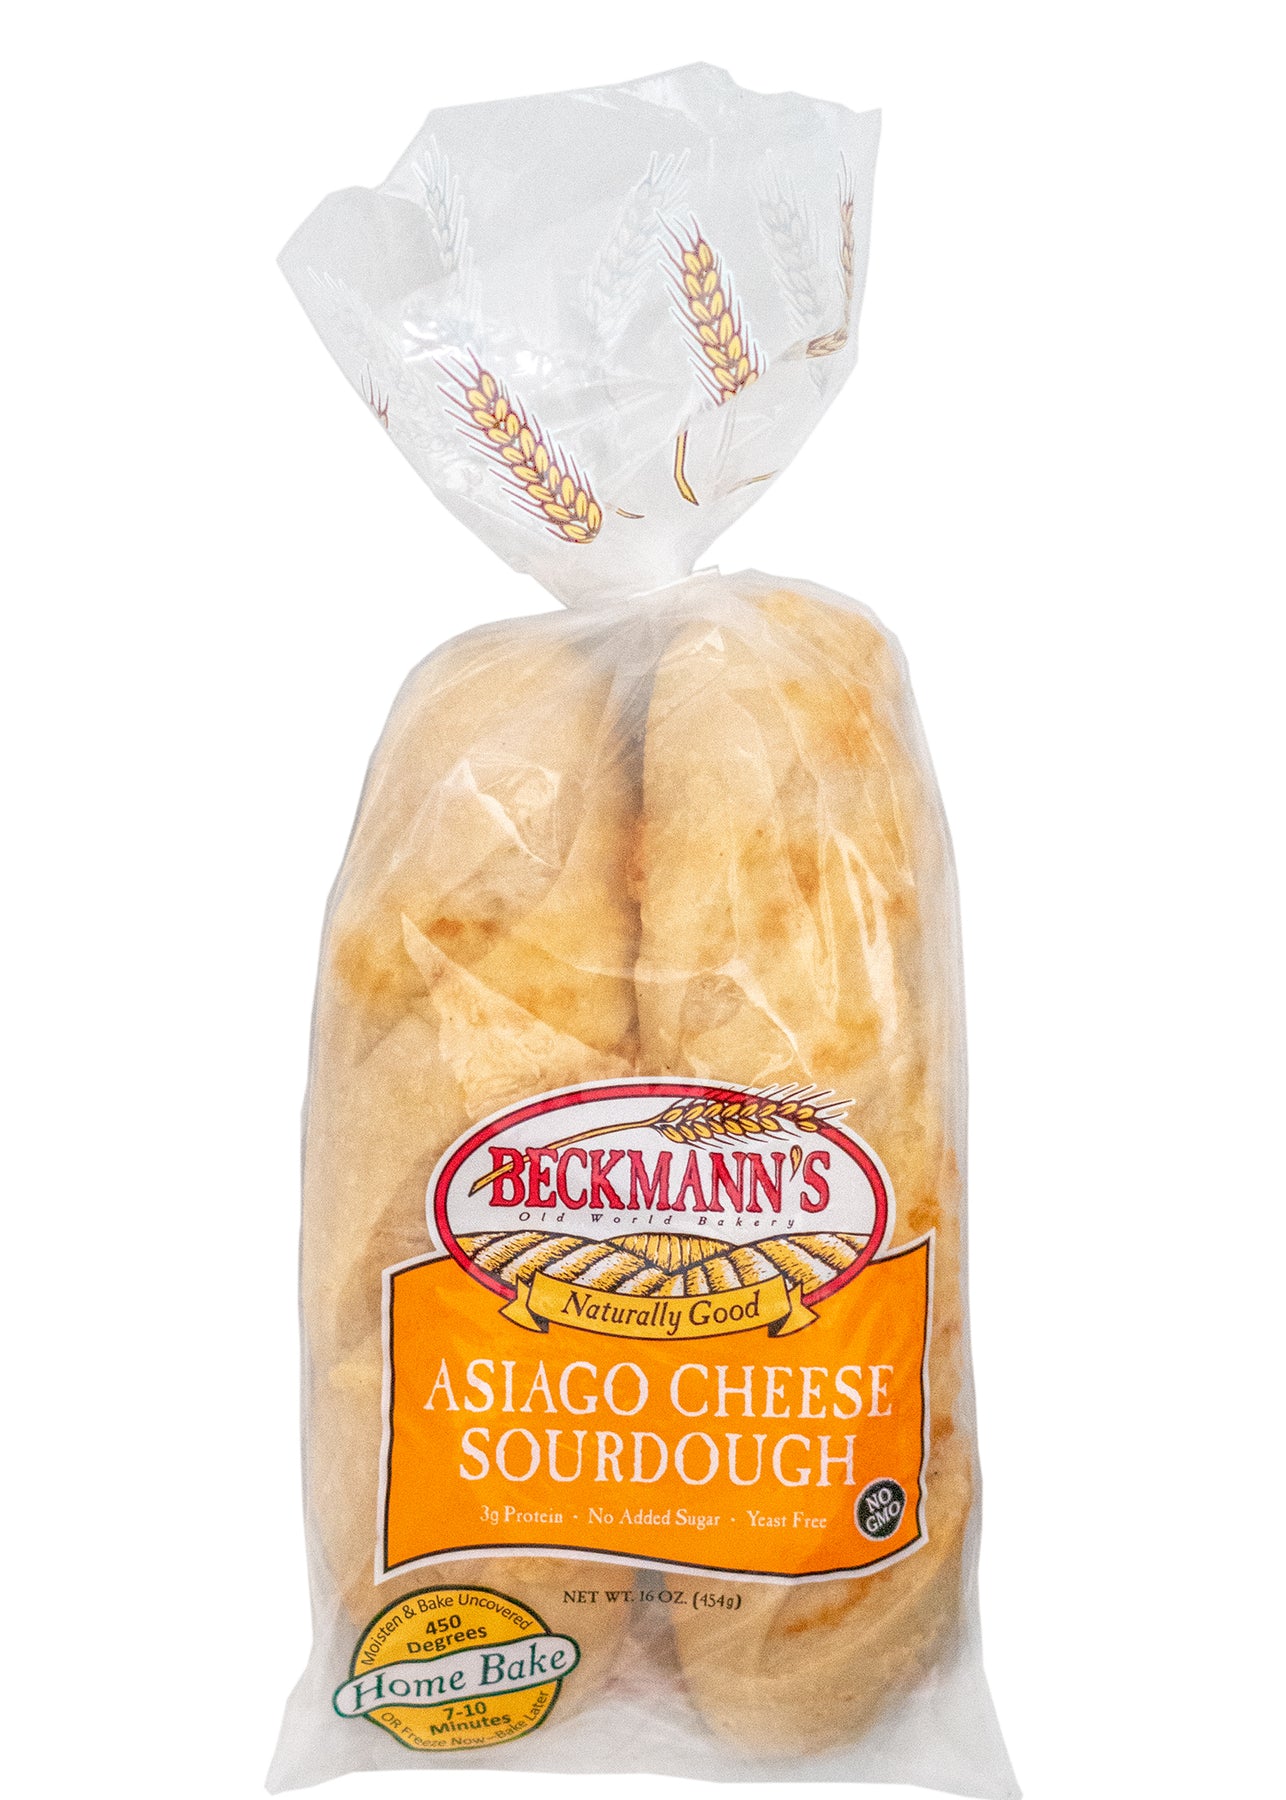 Beckmann's Asiago Cheese Sourdough Home Bake – Beckmann's Bakery